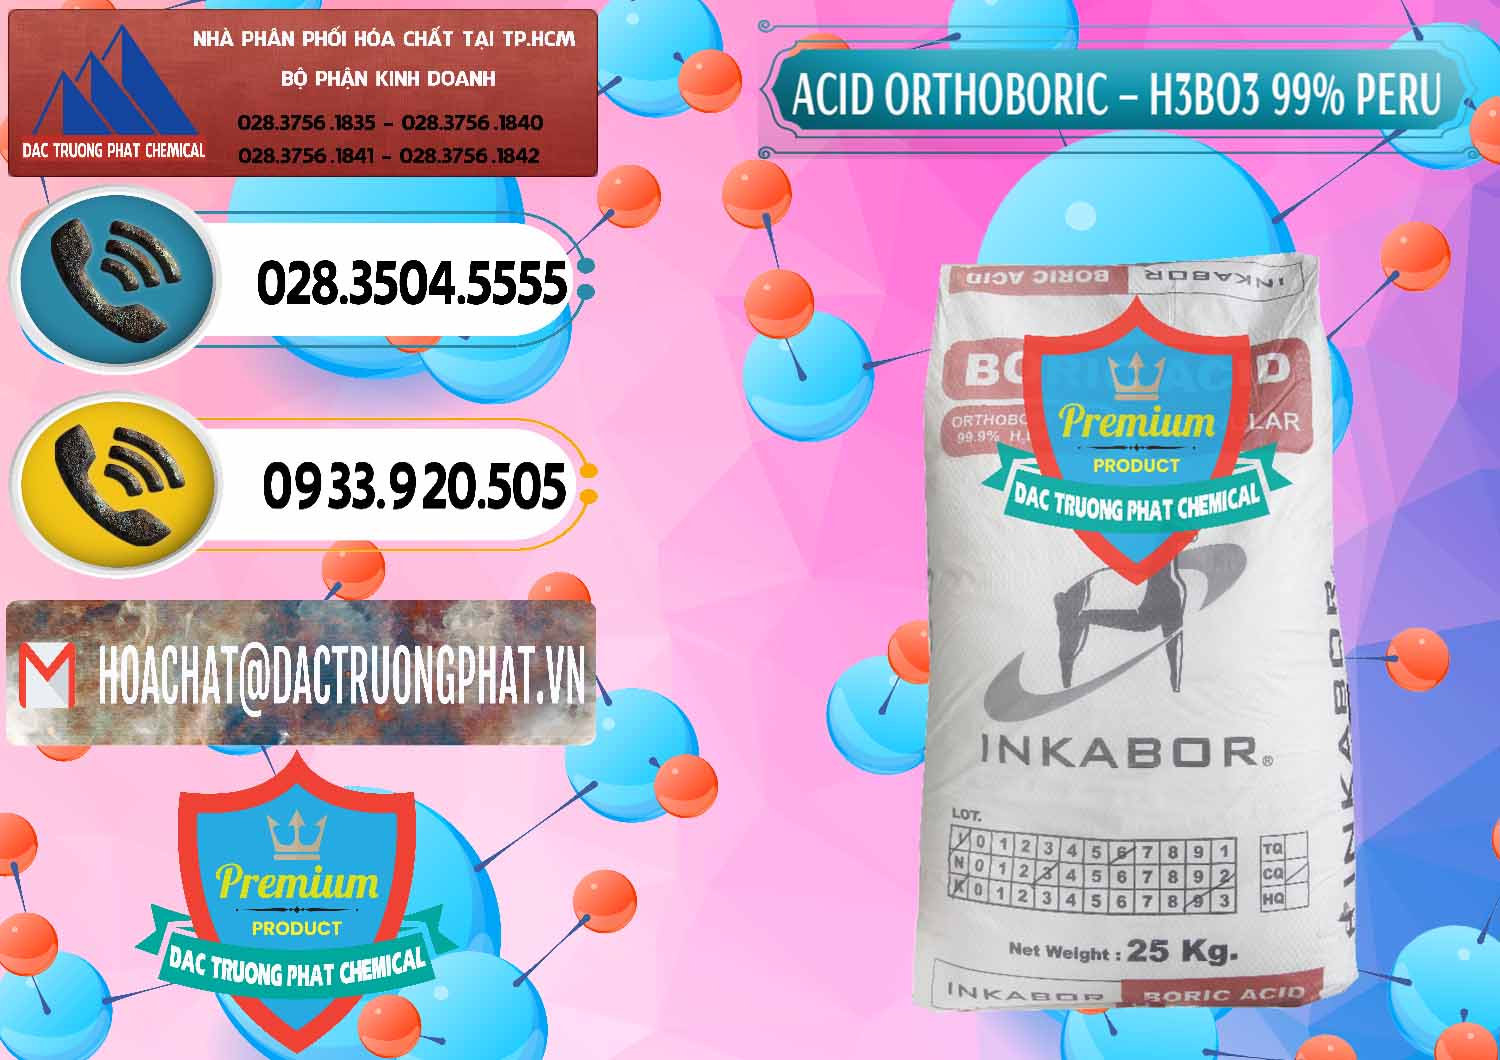 Đơn vị cung cấp và bán Acid Boric – Axit Boric H3BO3 99% Inkabor Peru - 0280 - Cty chuyên cung cấp & kinh doanh hóa chất tại TP.HCM - hoachatdetnhuom.vn